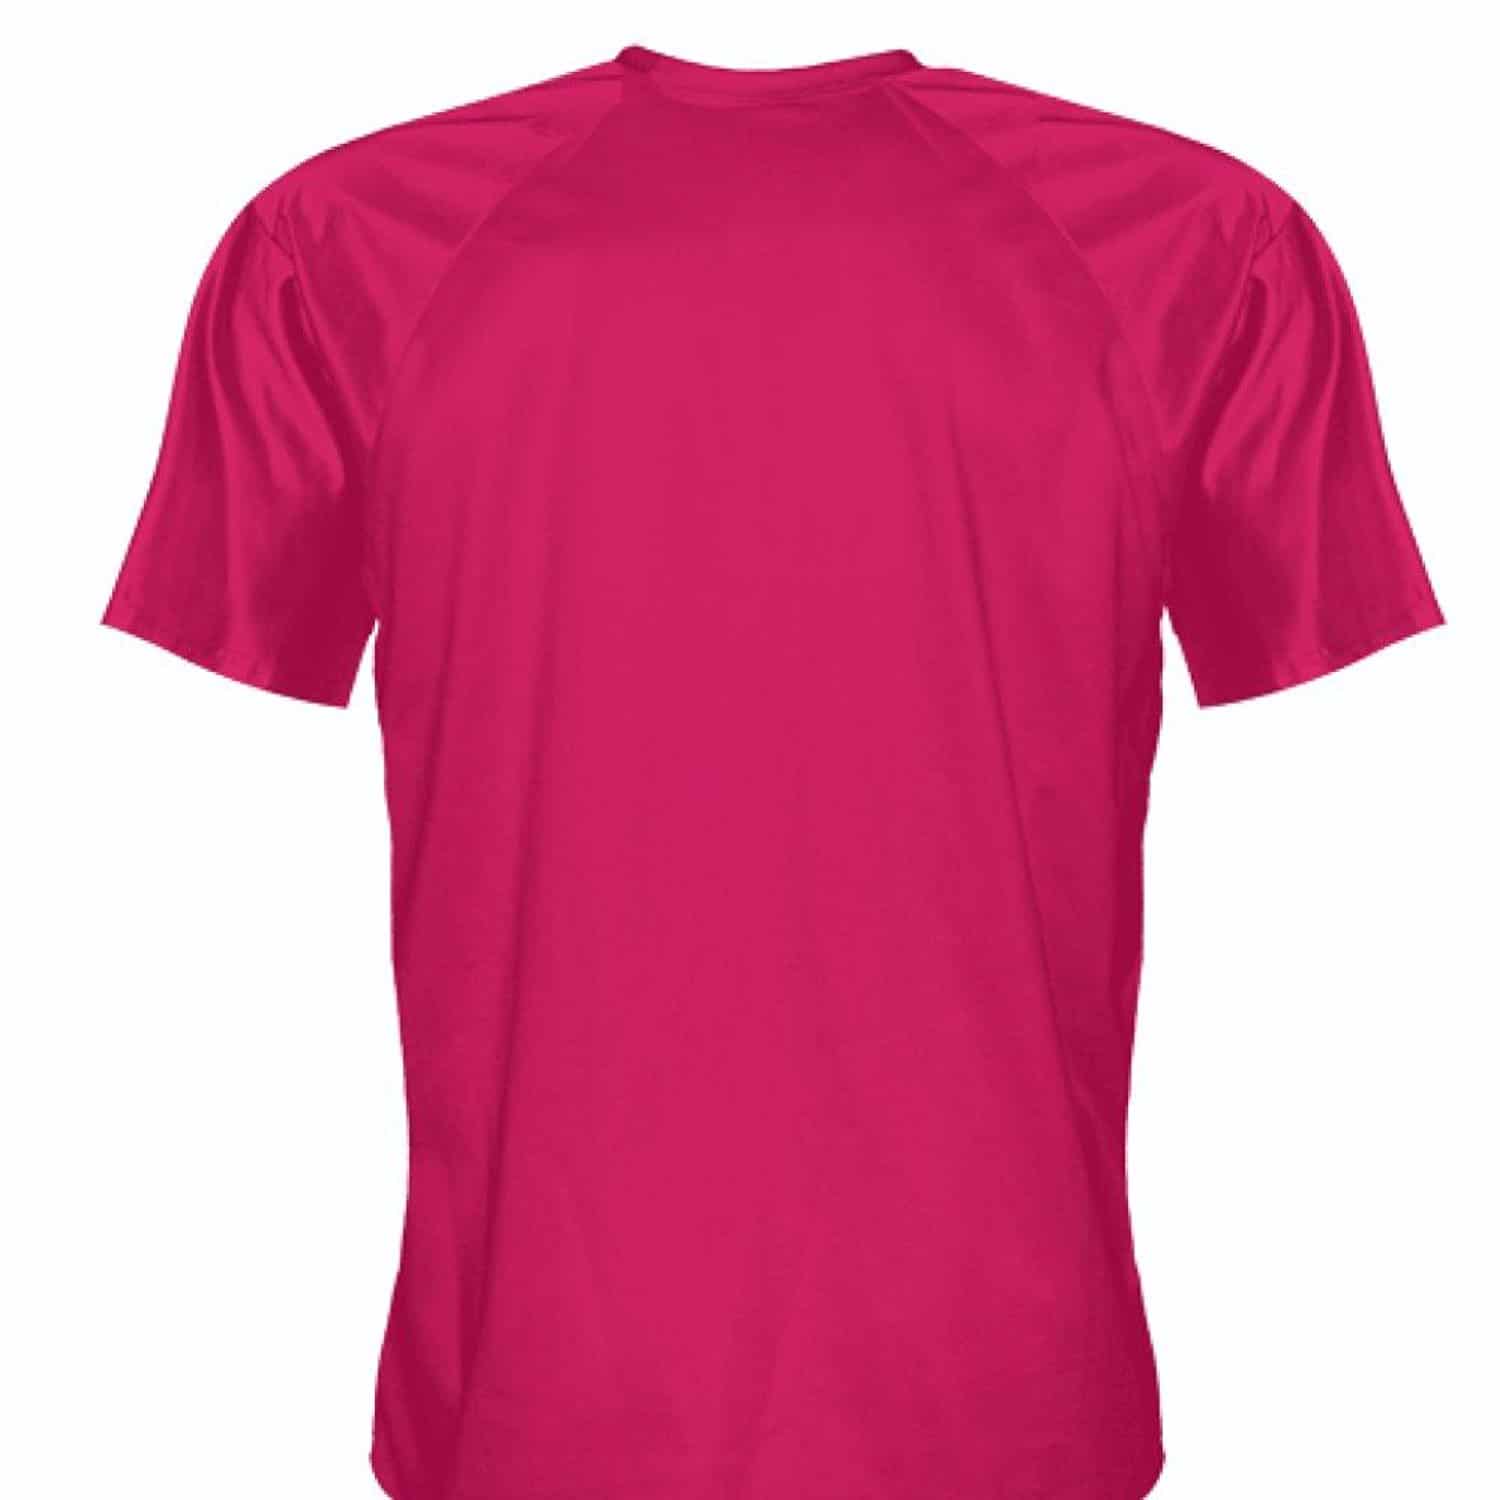 Soccer Jerseys | Hot Pink Soccer Jerseys - Lightningwear